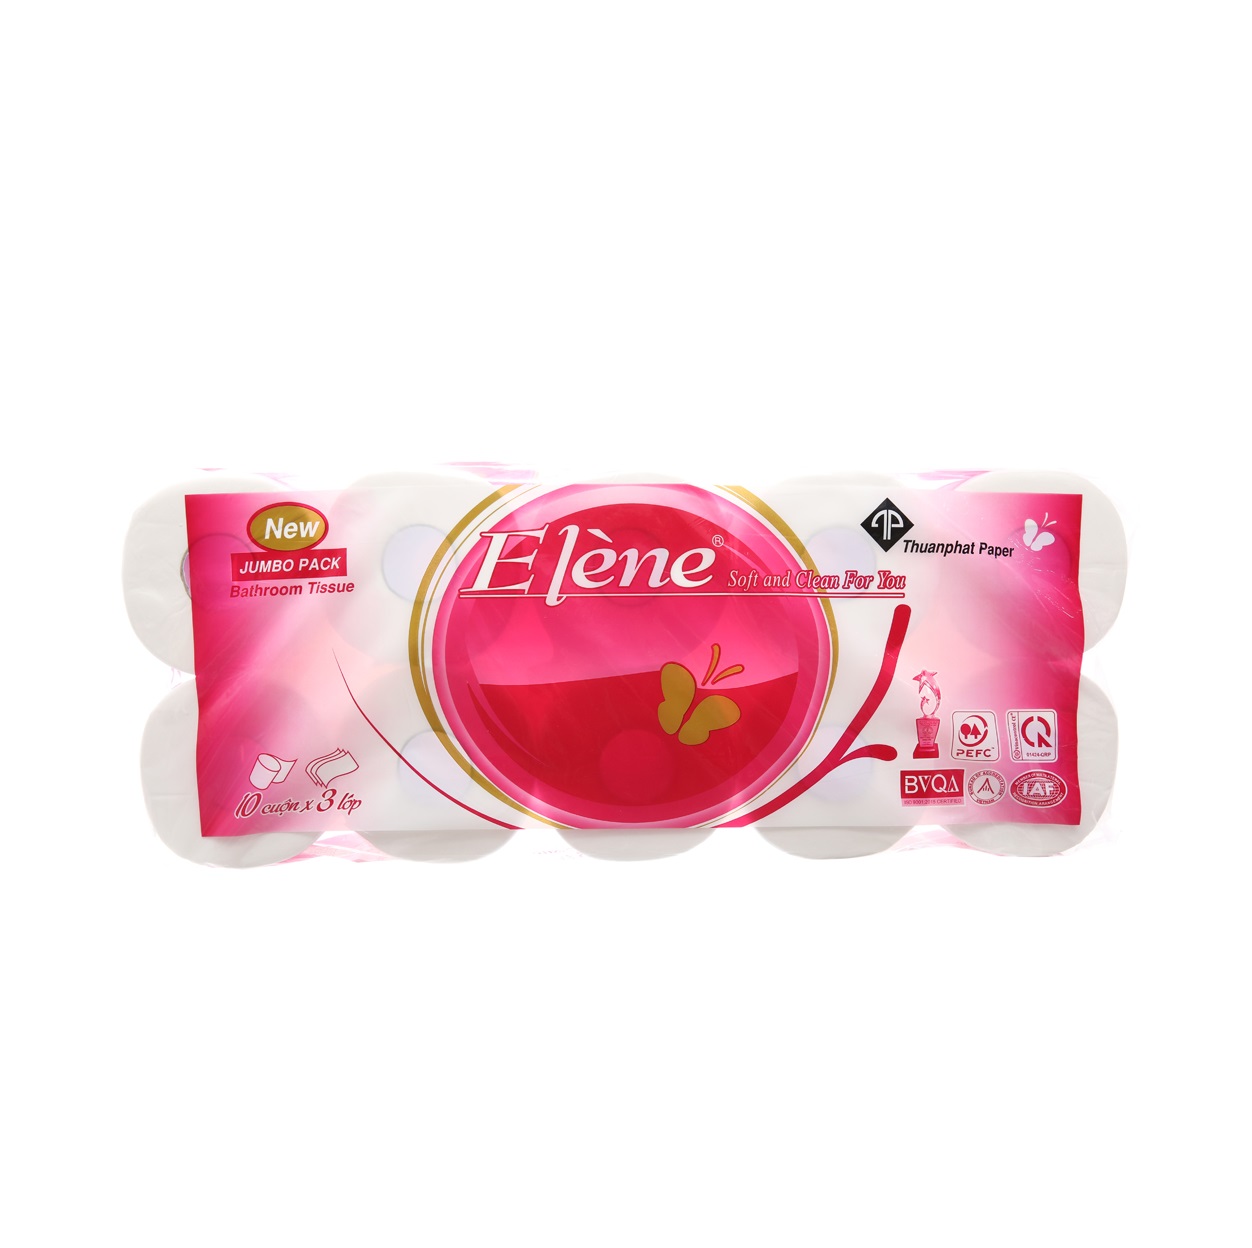 Giấy vệ sinh Elene 10 cuộn hồng - Giấy Vệ Sinh Hoa Bách Hợp - Công Ty TNHH Xuất Nhập Khẩu Hoa Bách Hợp